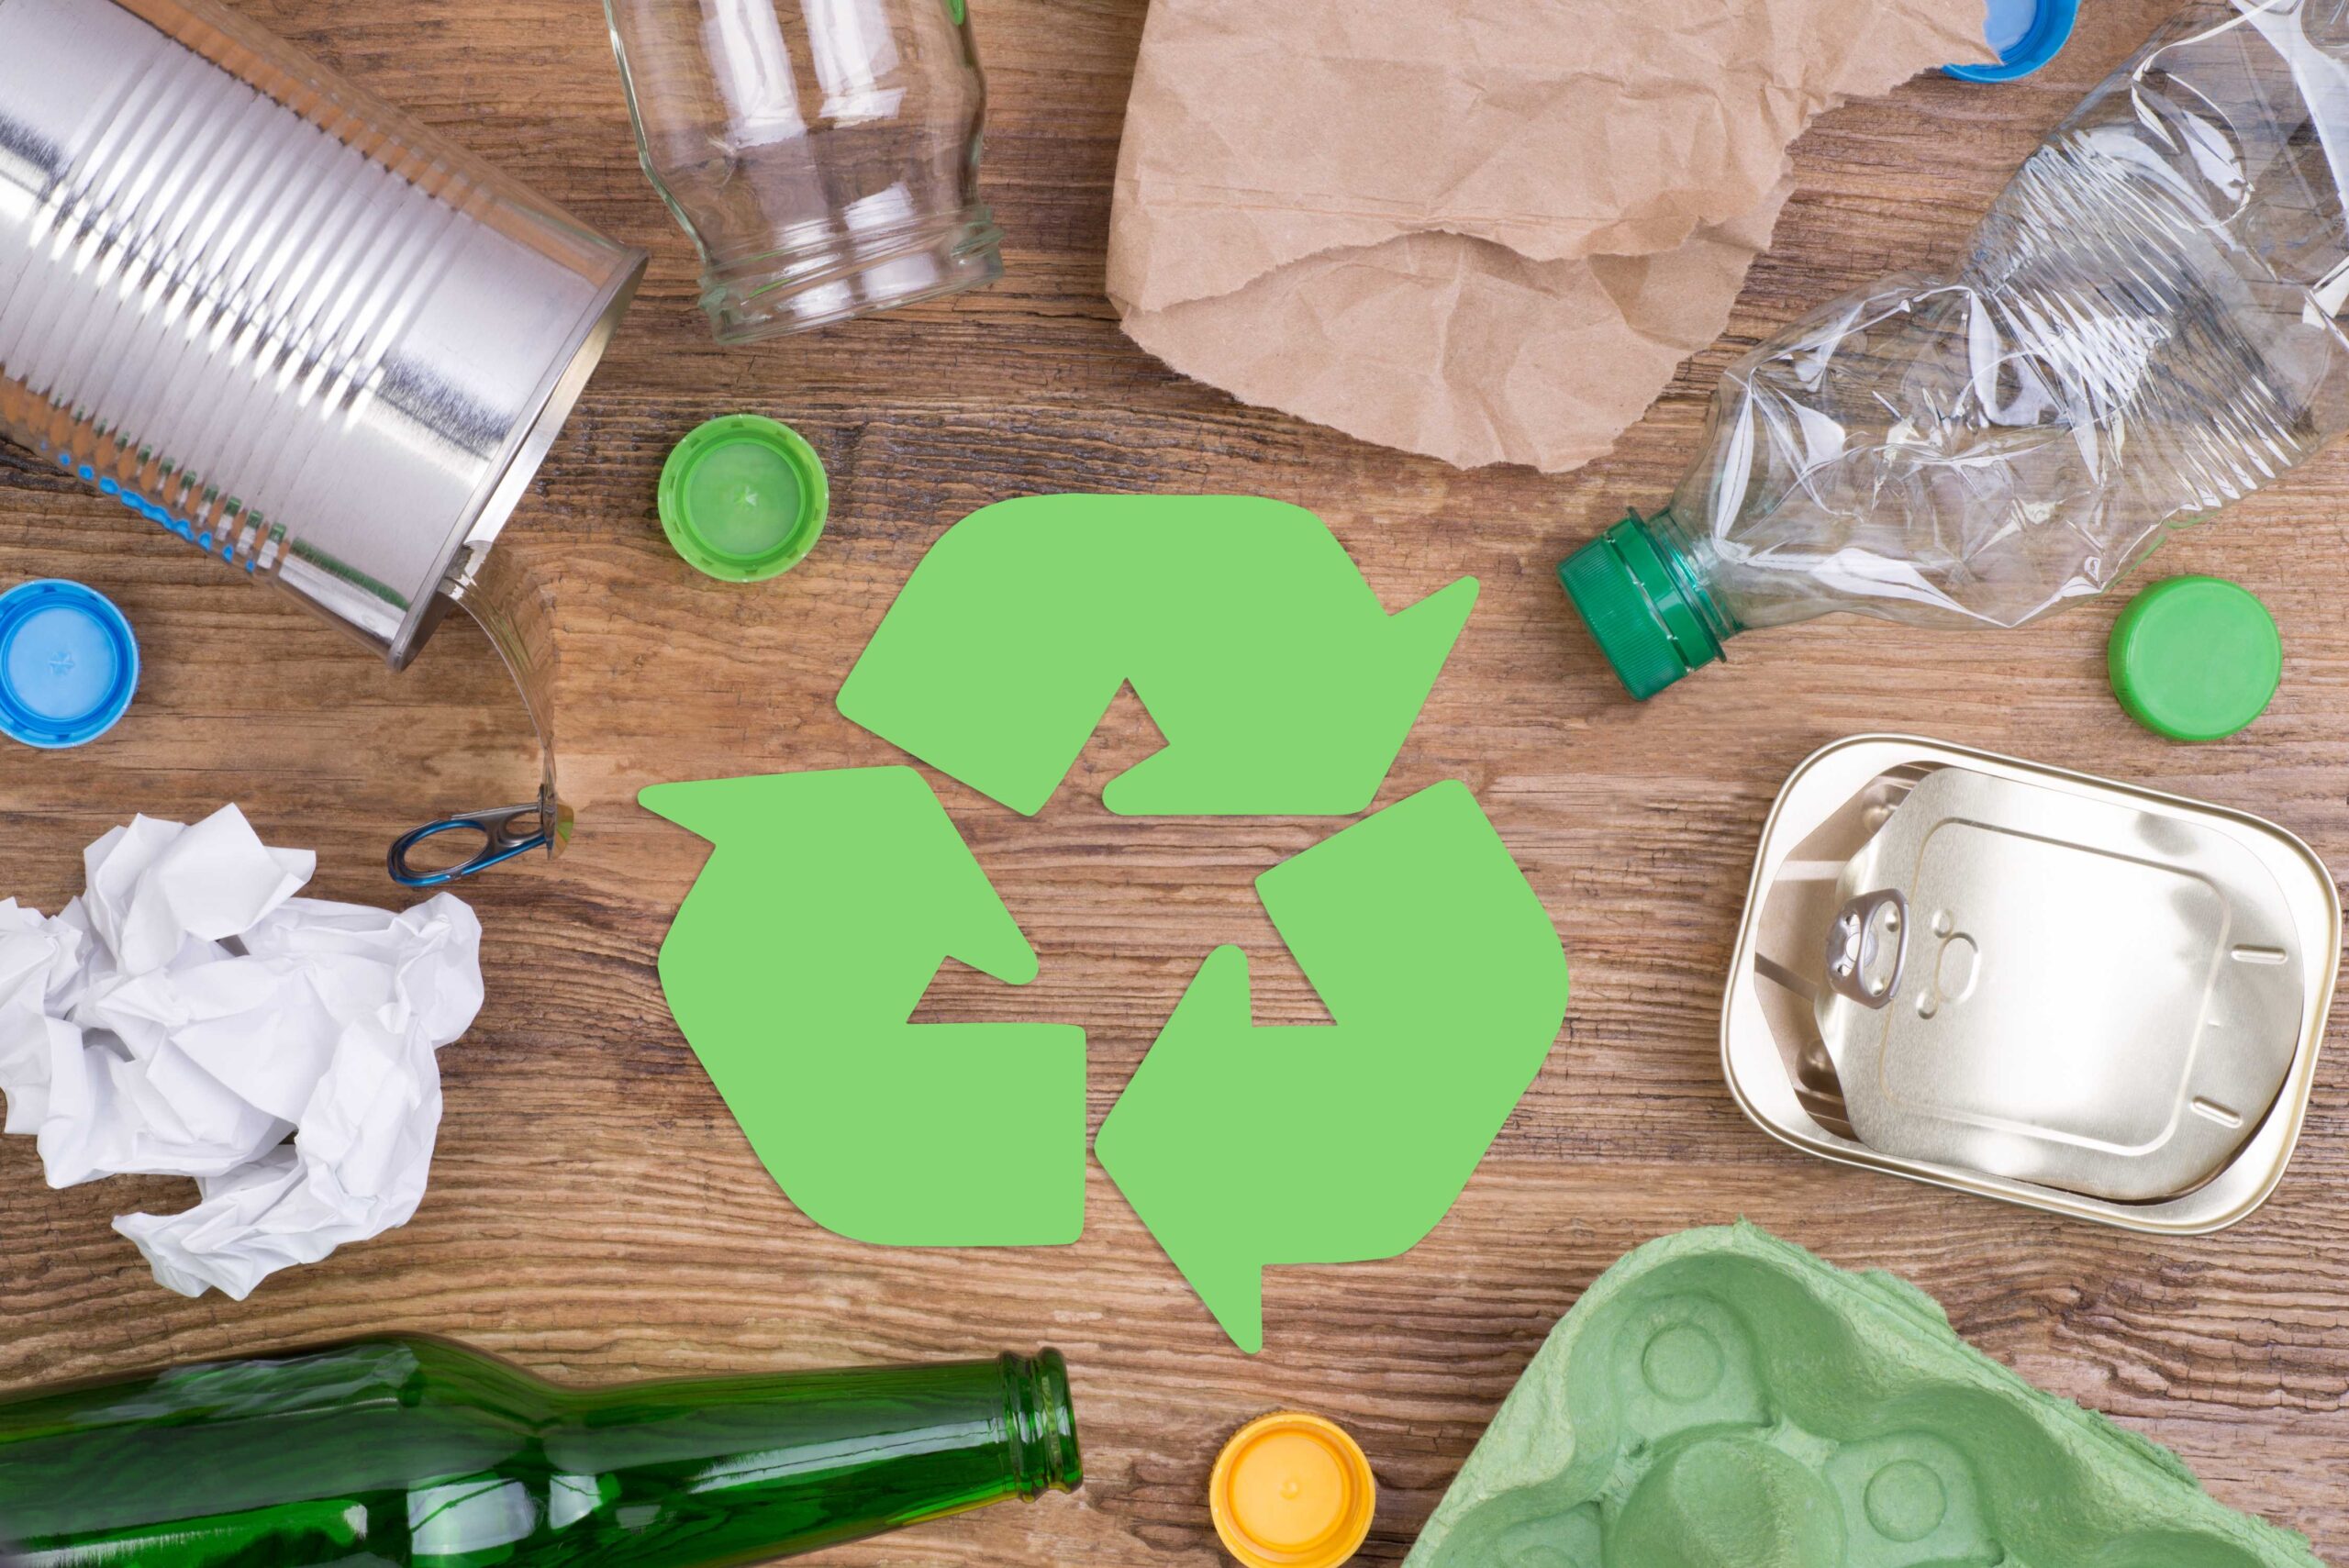 Conoces el significado de todos los símbolos del reciclaje? - Protegiendo  Personas